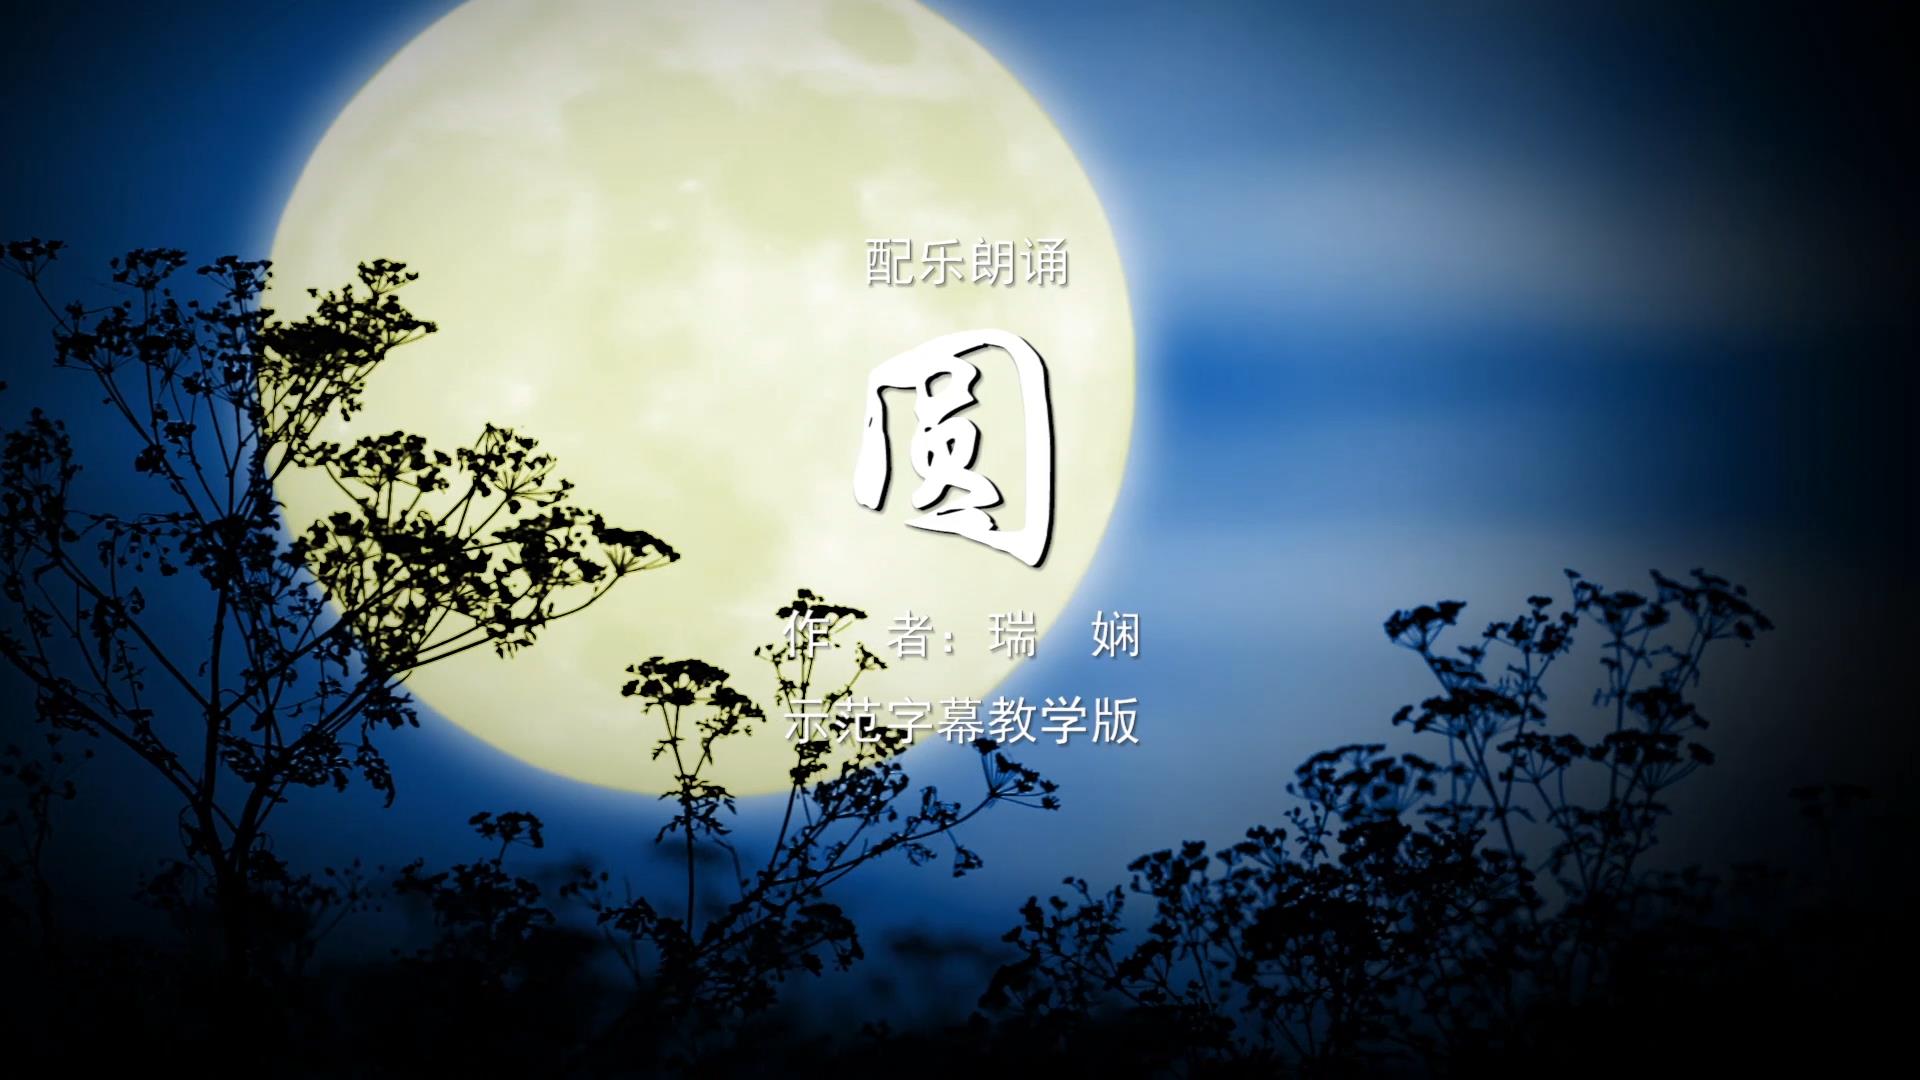 圆 十五的月亮诗歌朗诵配乐伴奏舞台演出LED背景大屏幕视频素材TV